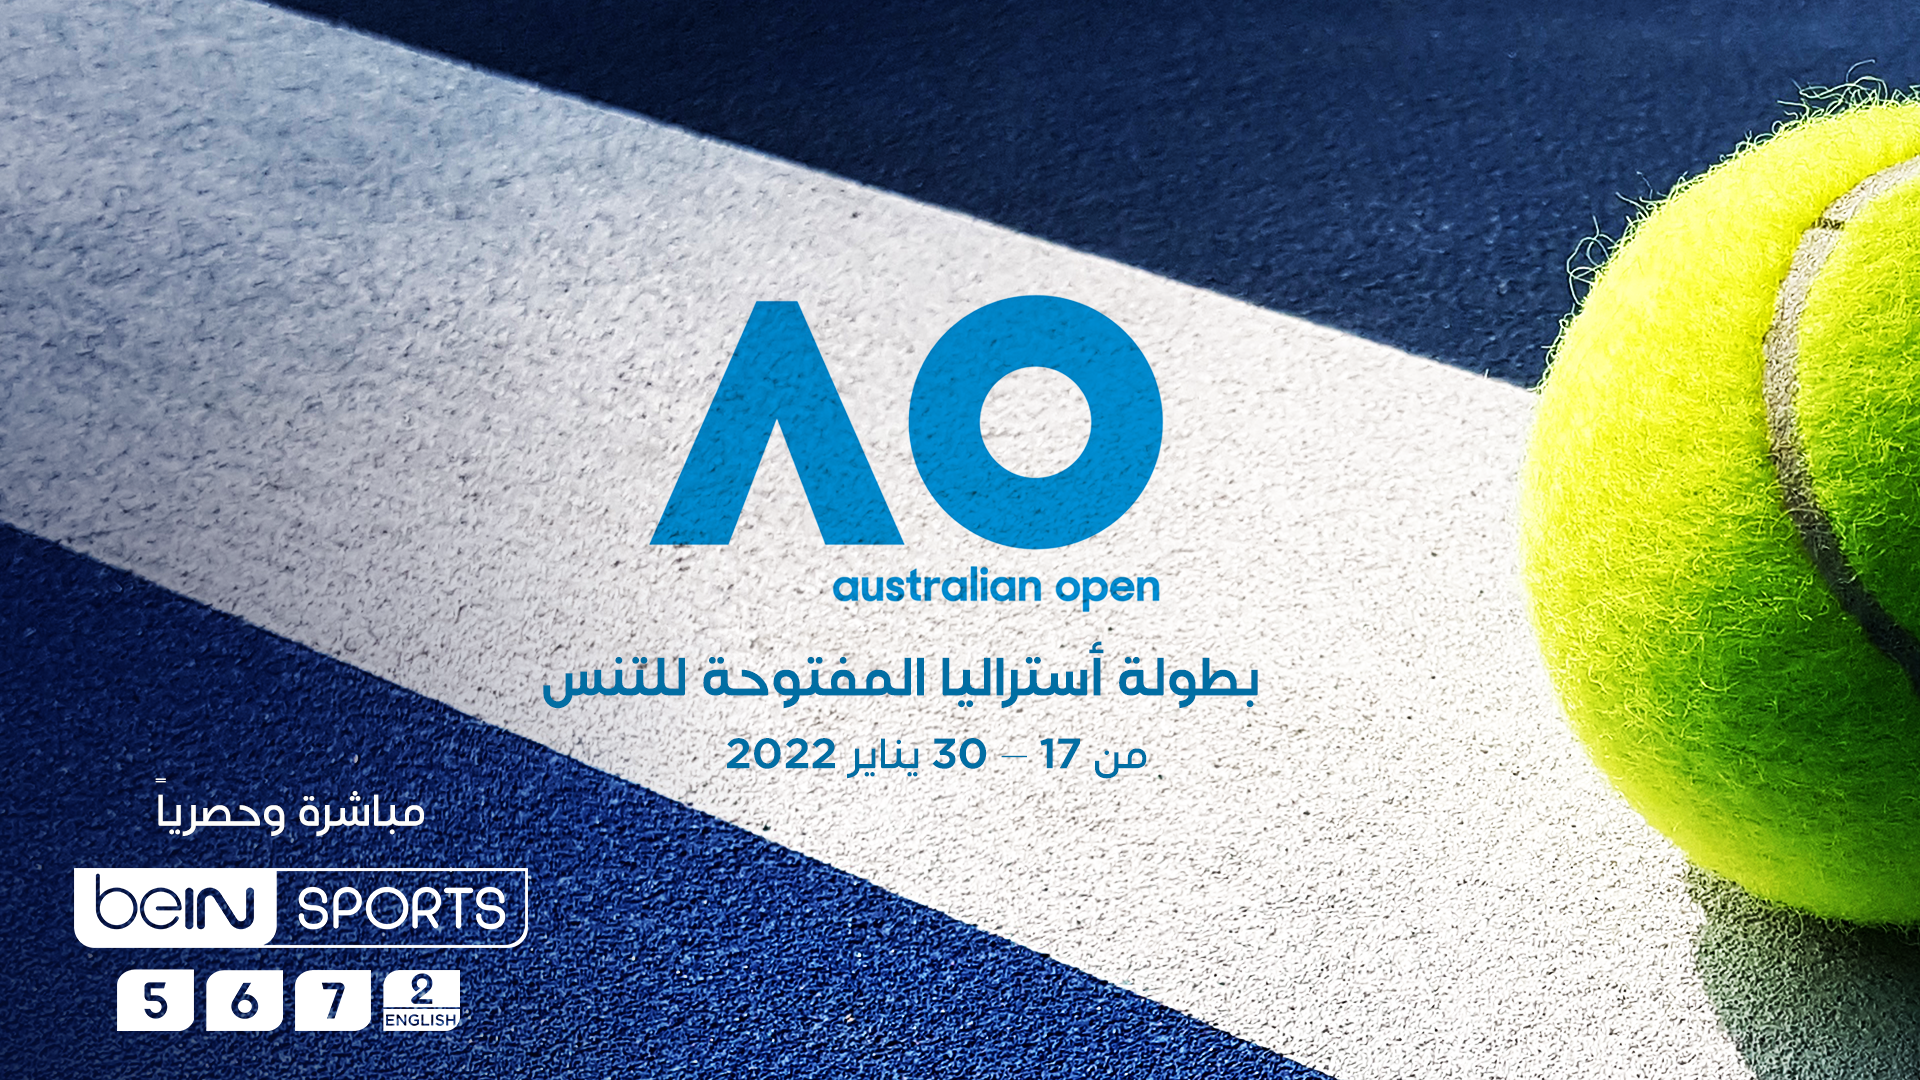 بطولة أستراليا المفتوحة للتنس 2022 مباشرة وحصرية على قنوات beIN SPORTS في منطقة الشرق الأوسط وشمال إفريقيا